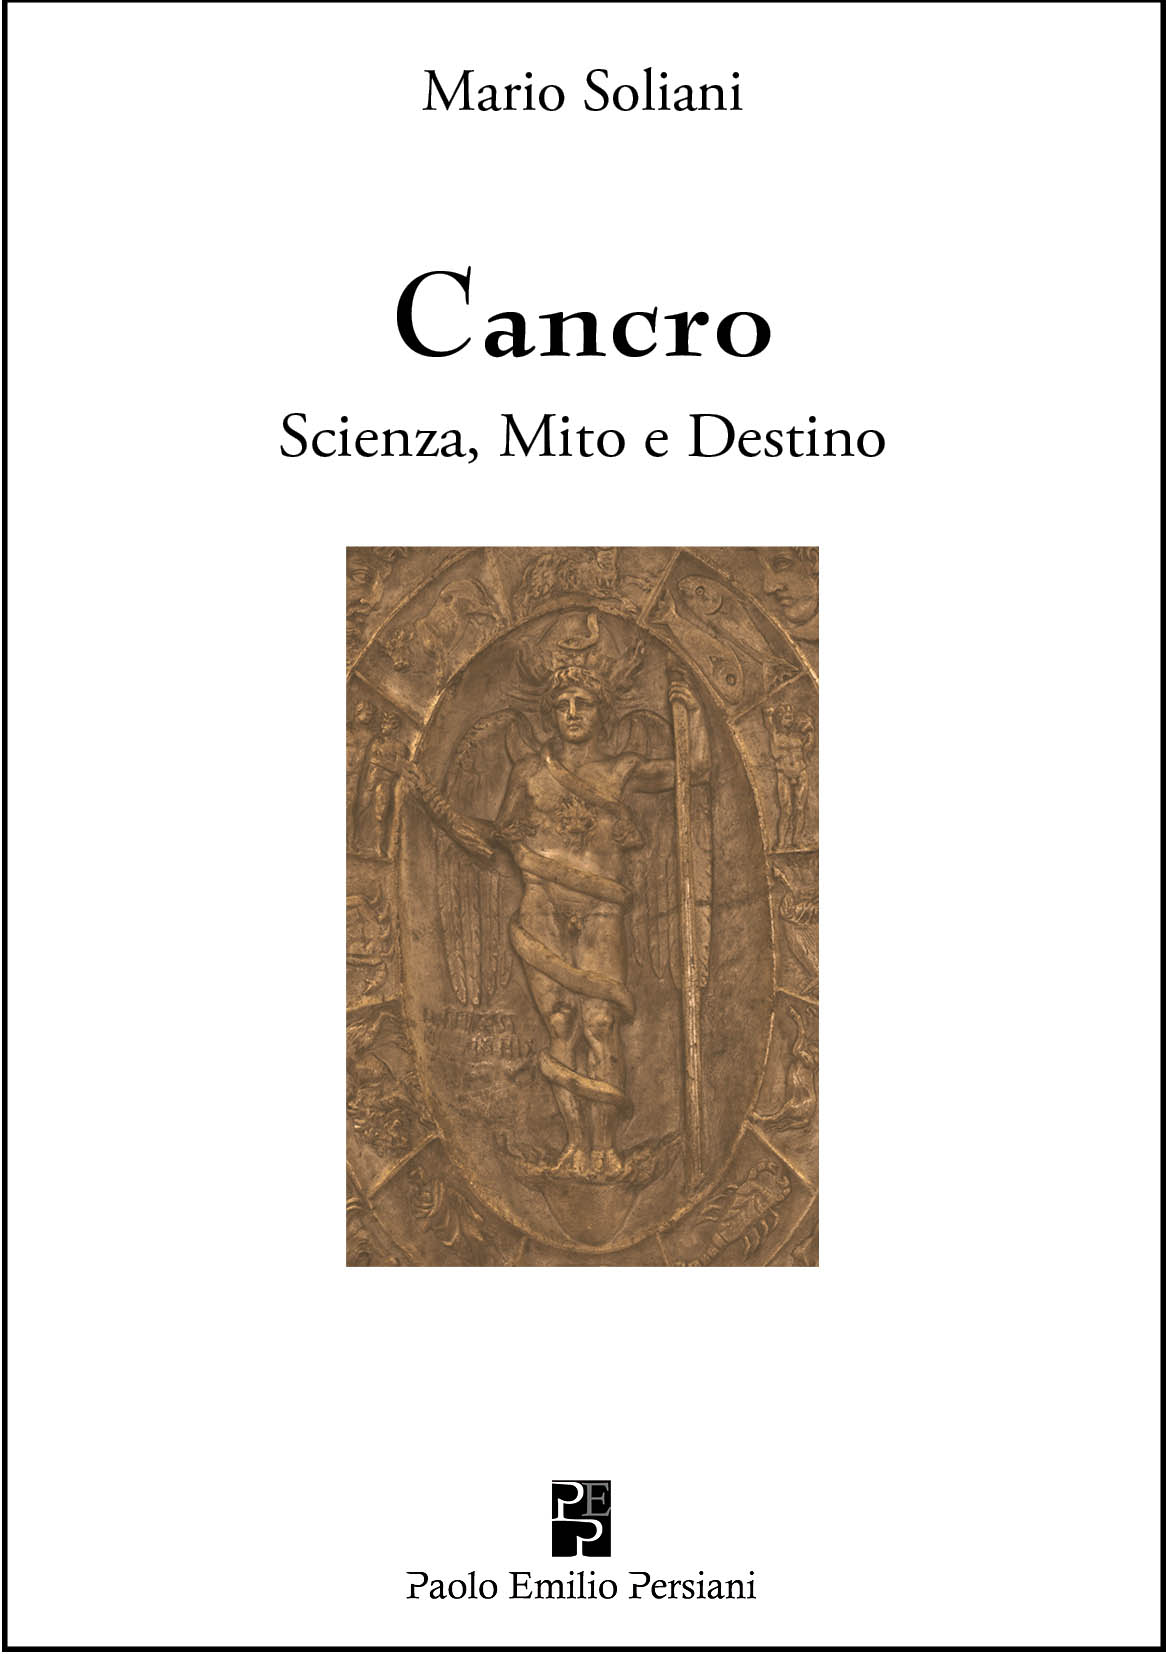 Nuova presentazione del libro “Cancro. Scienza, Mito e Destino”